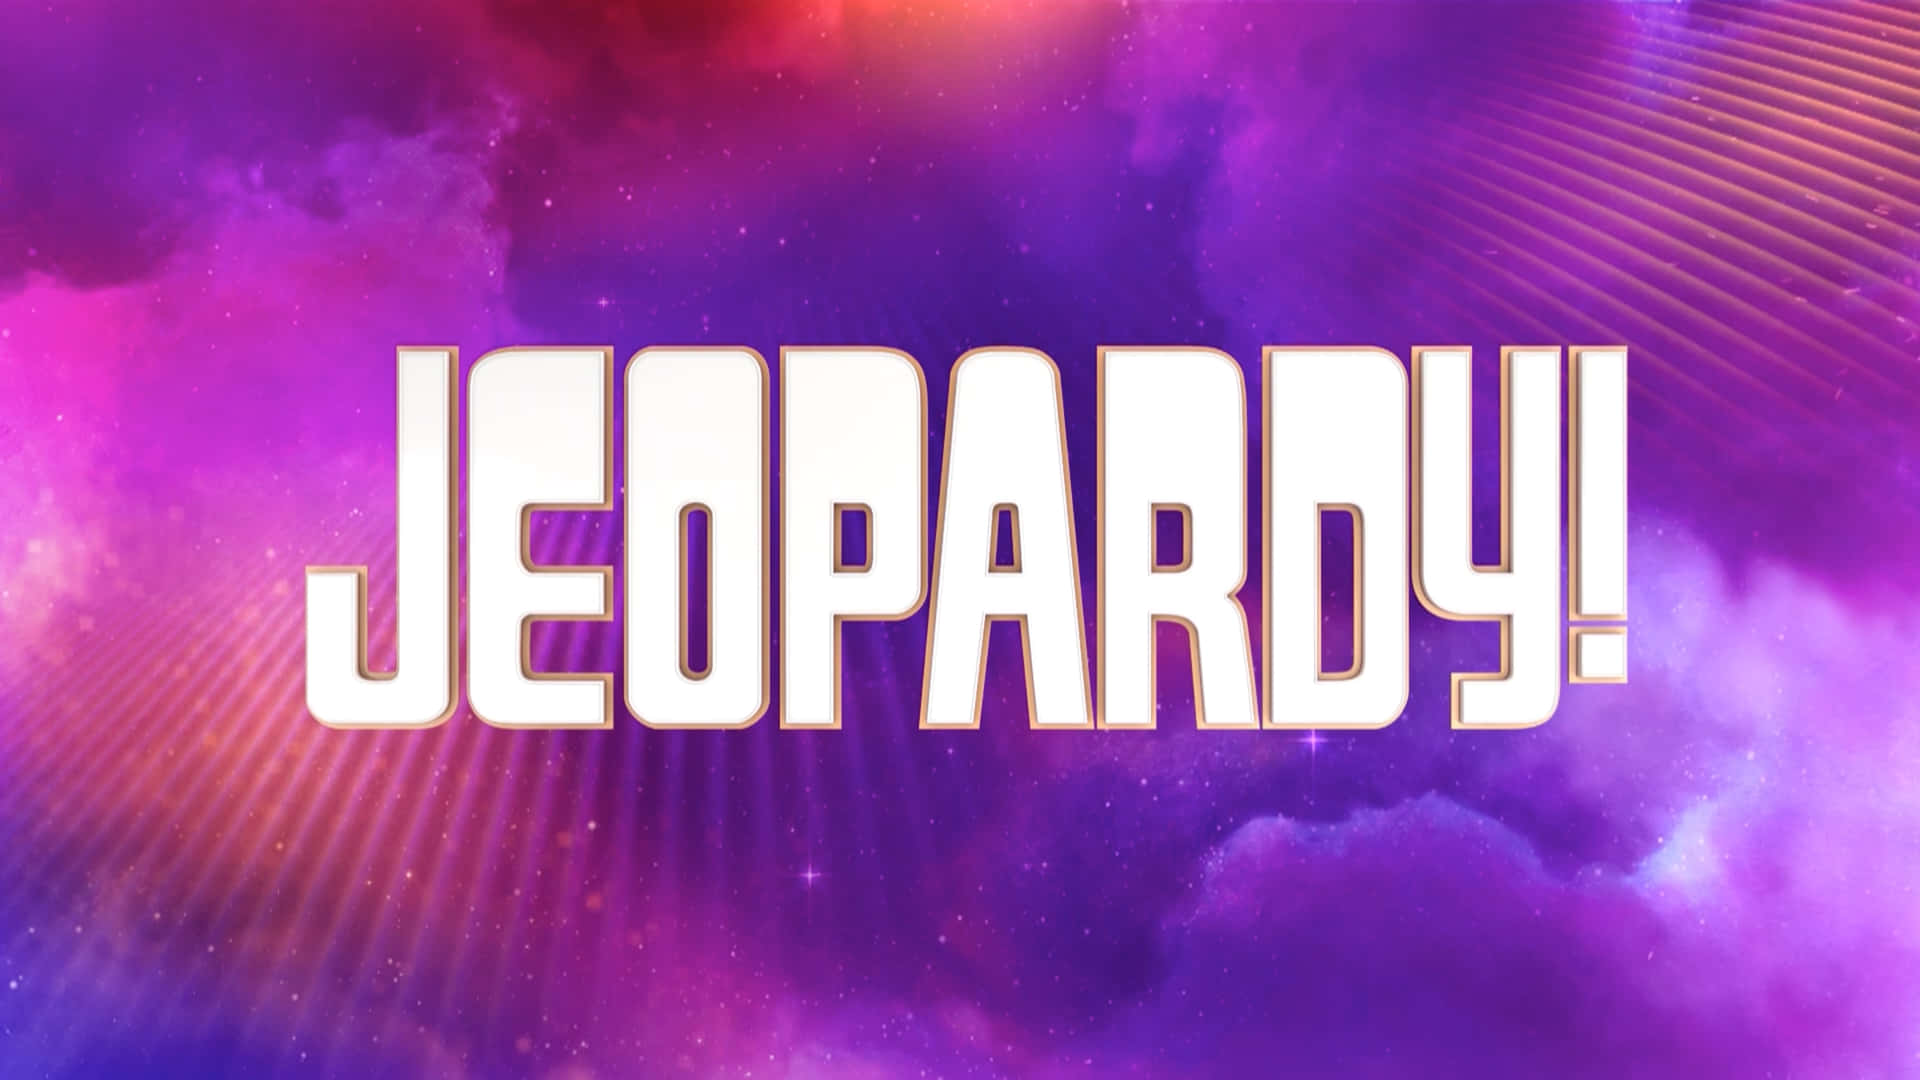 Logode Jeopardy Con Un Fondo Morado